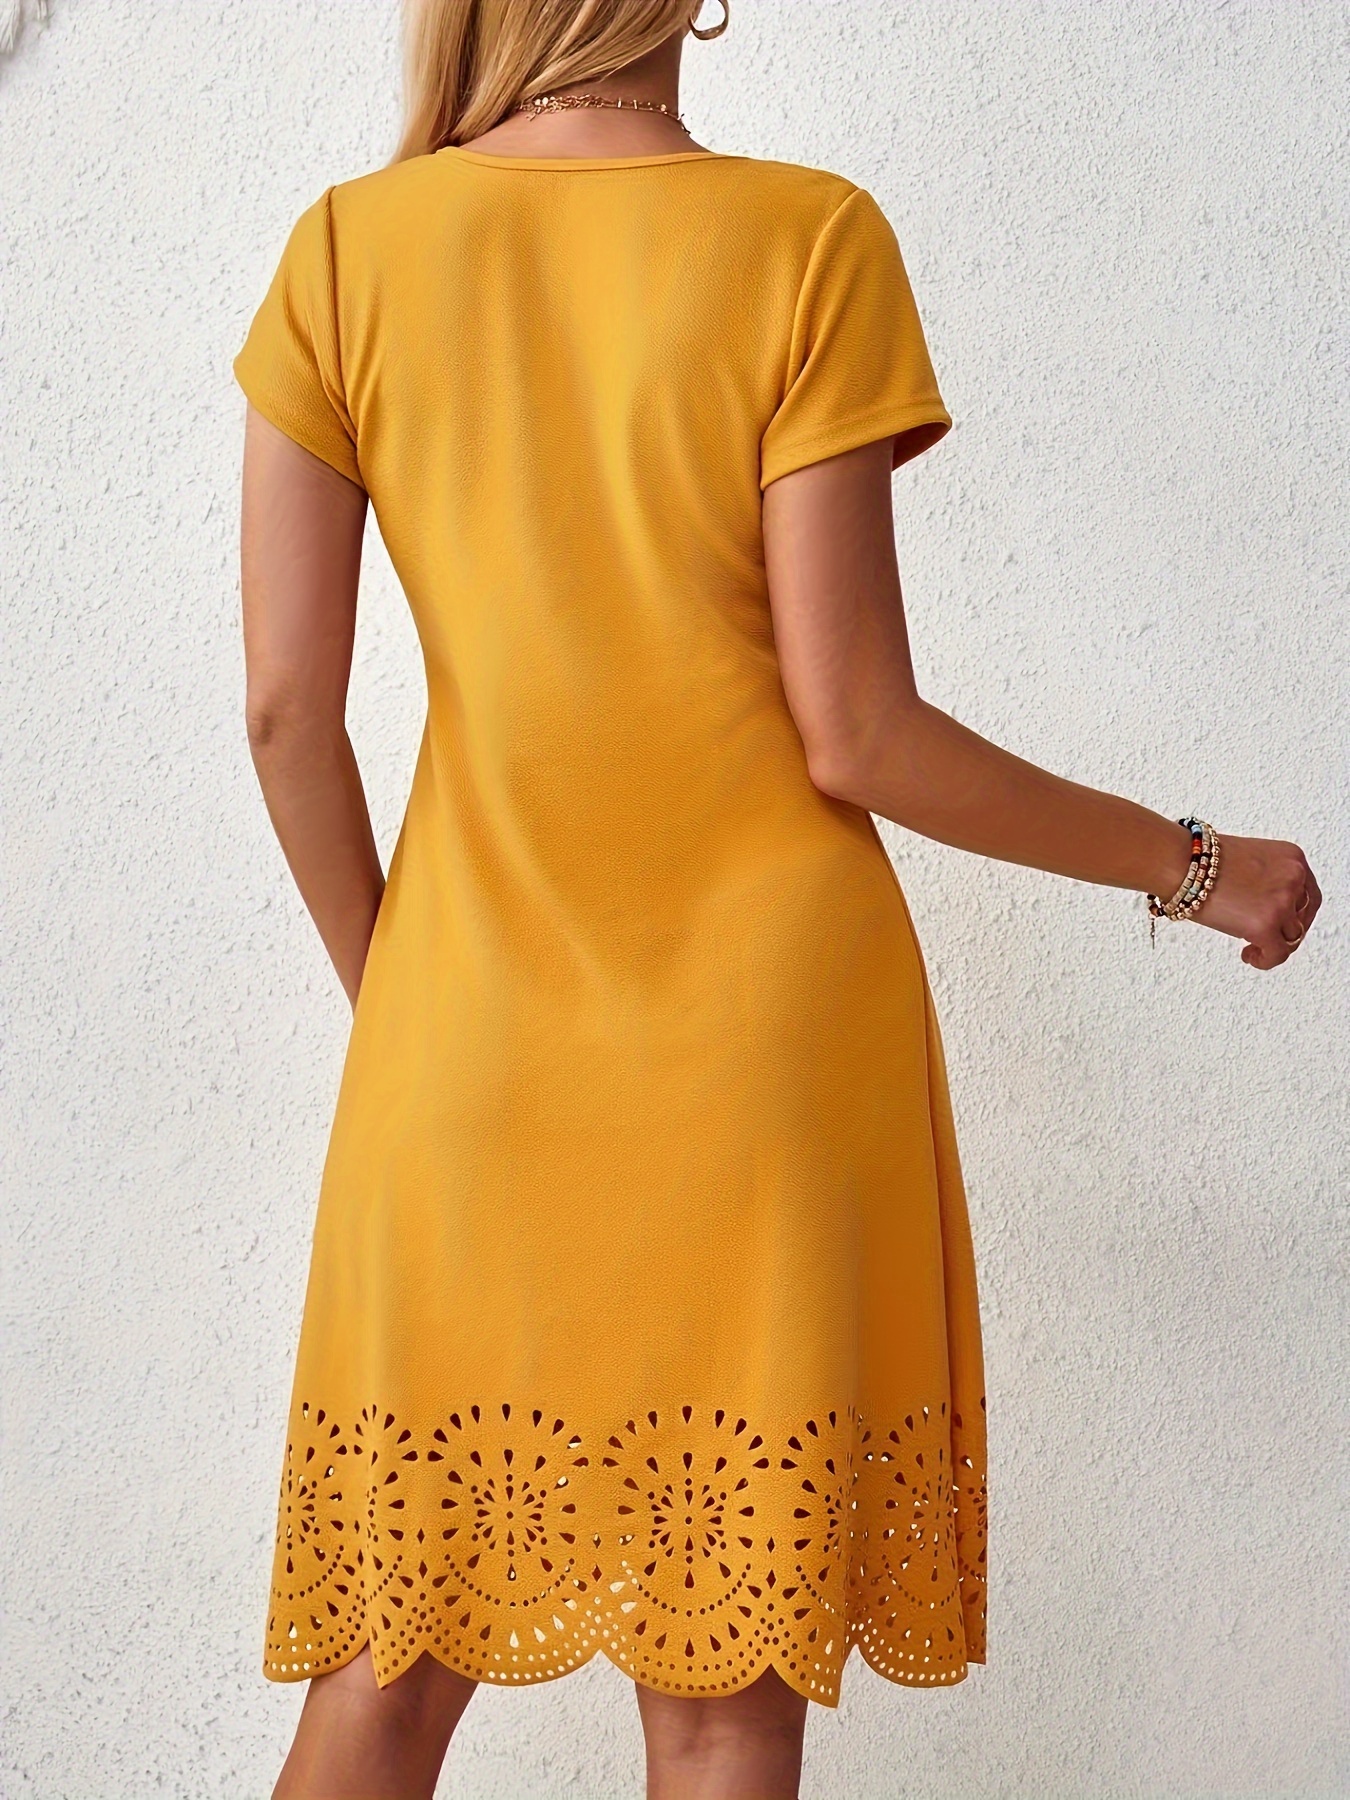 solid color v neck dress elegant short sleeve dress for spring summer womens clothing